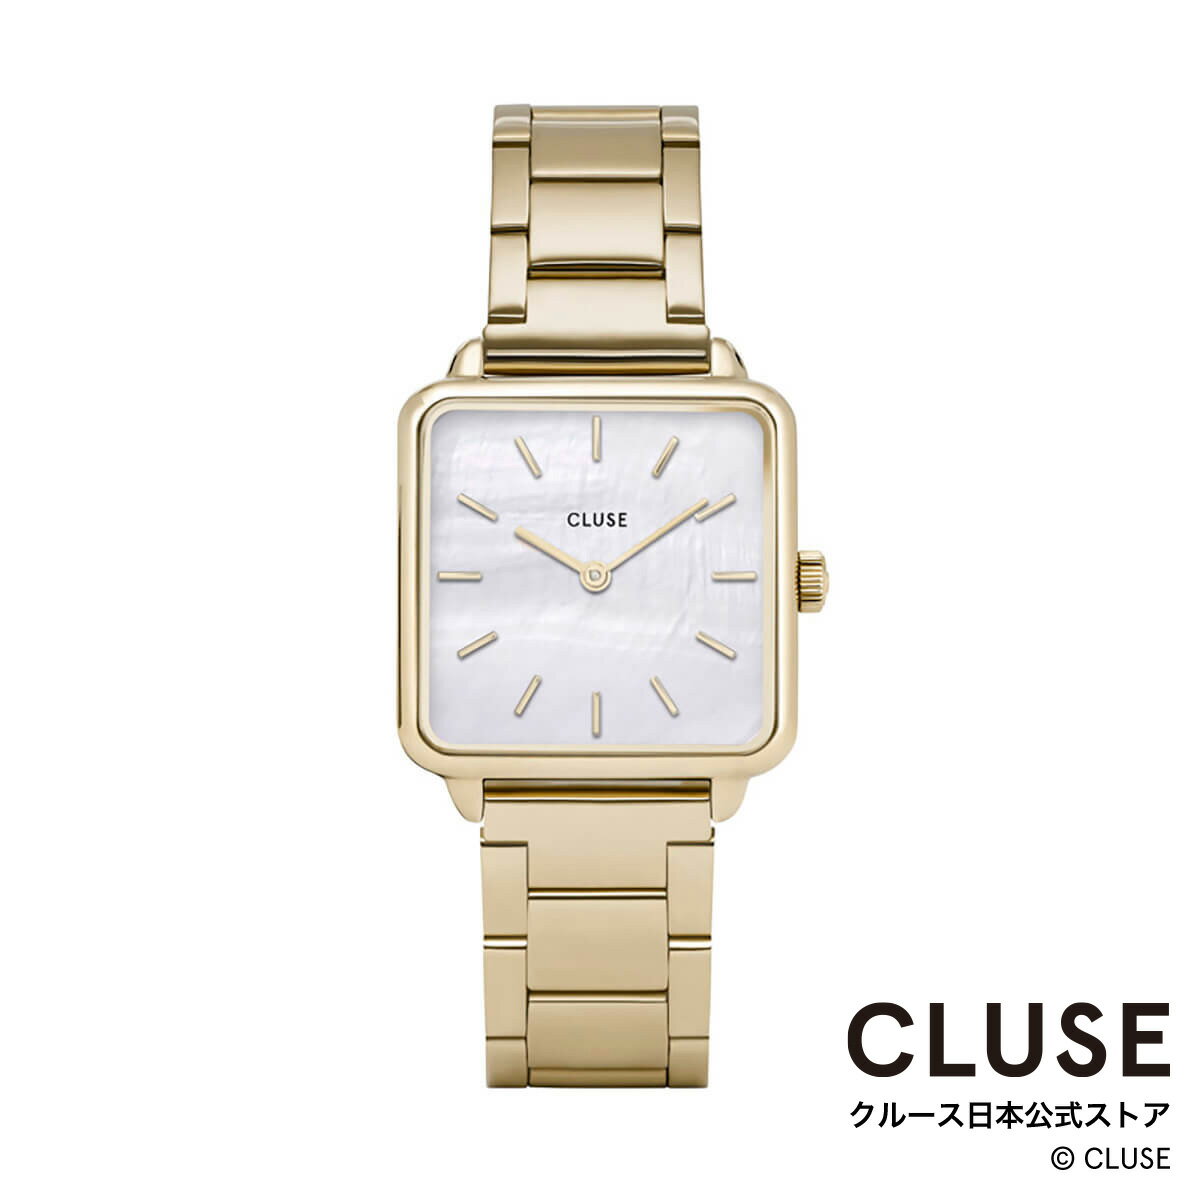 クルース ビジネス腕時計 レディース クルース CLUSE 日本公式ストア ラ・テトラゴン スリーリンク ゴールド ホワイトパール レディース 女性 腕時計 時計 防水 クォーツ